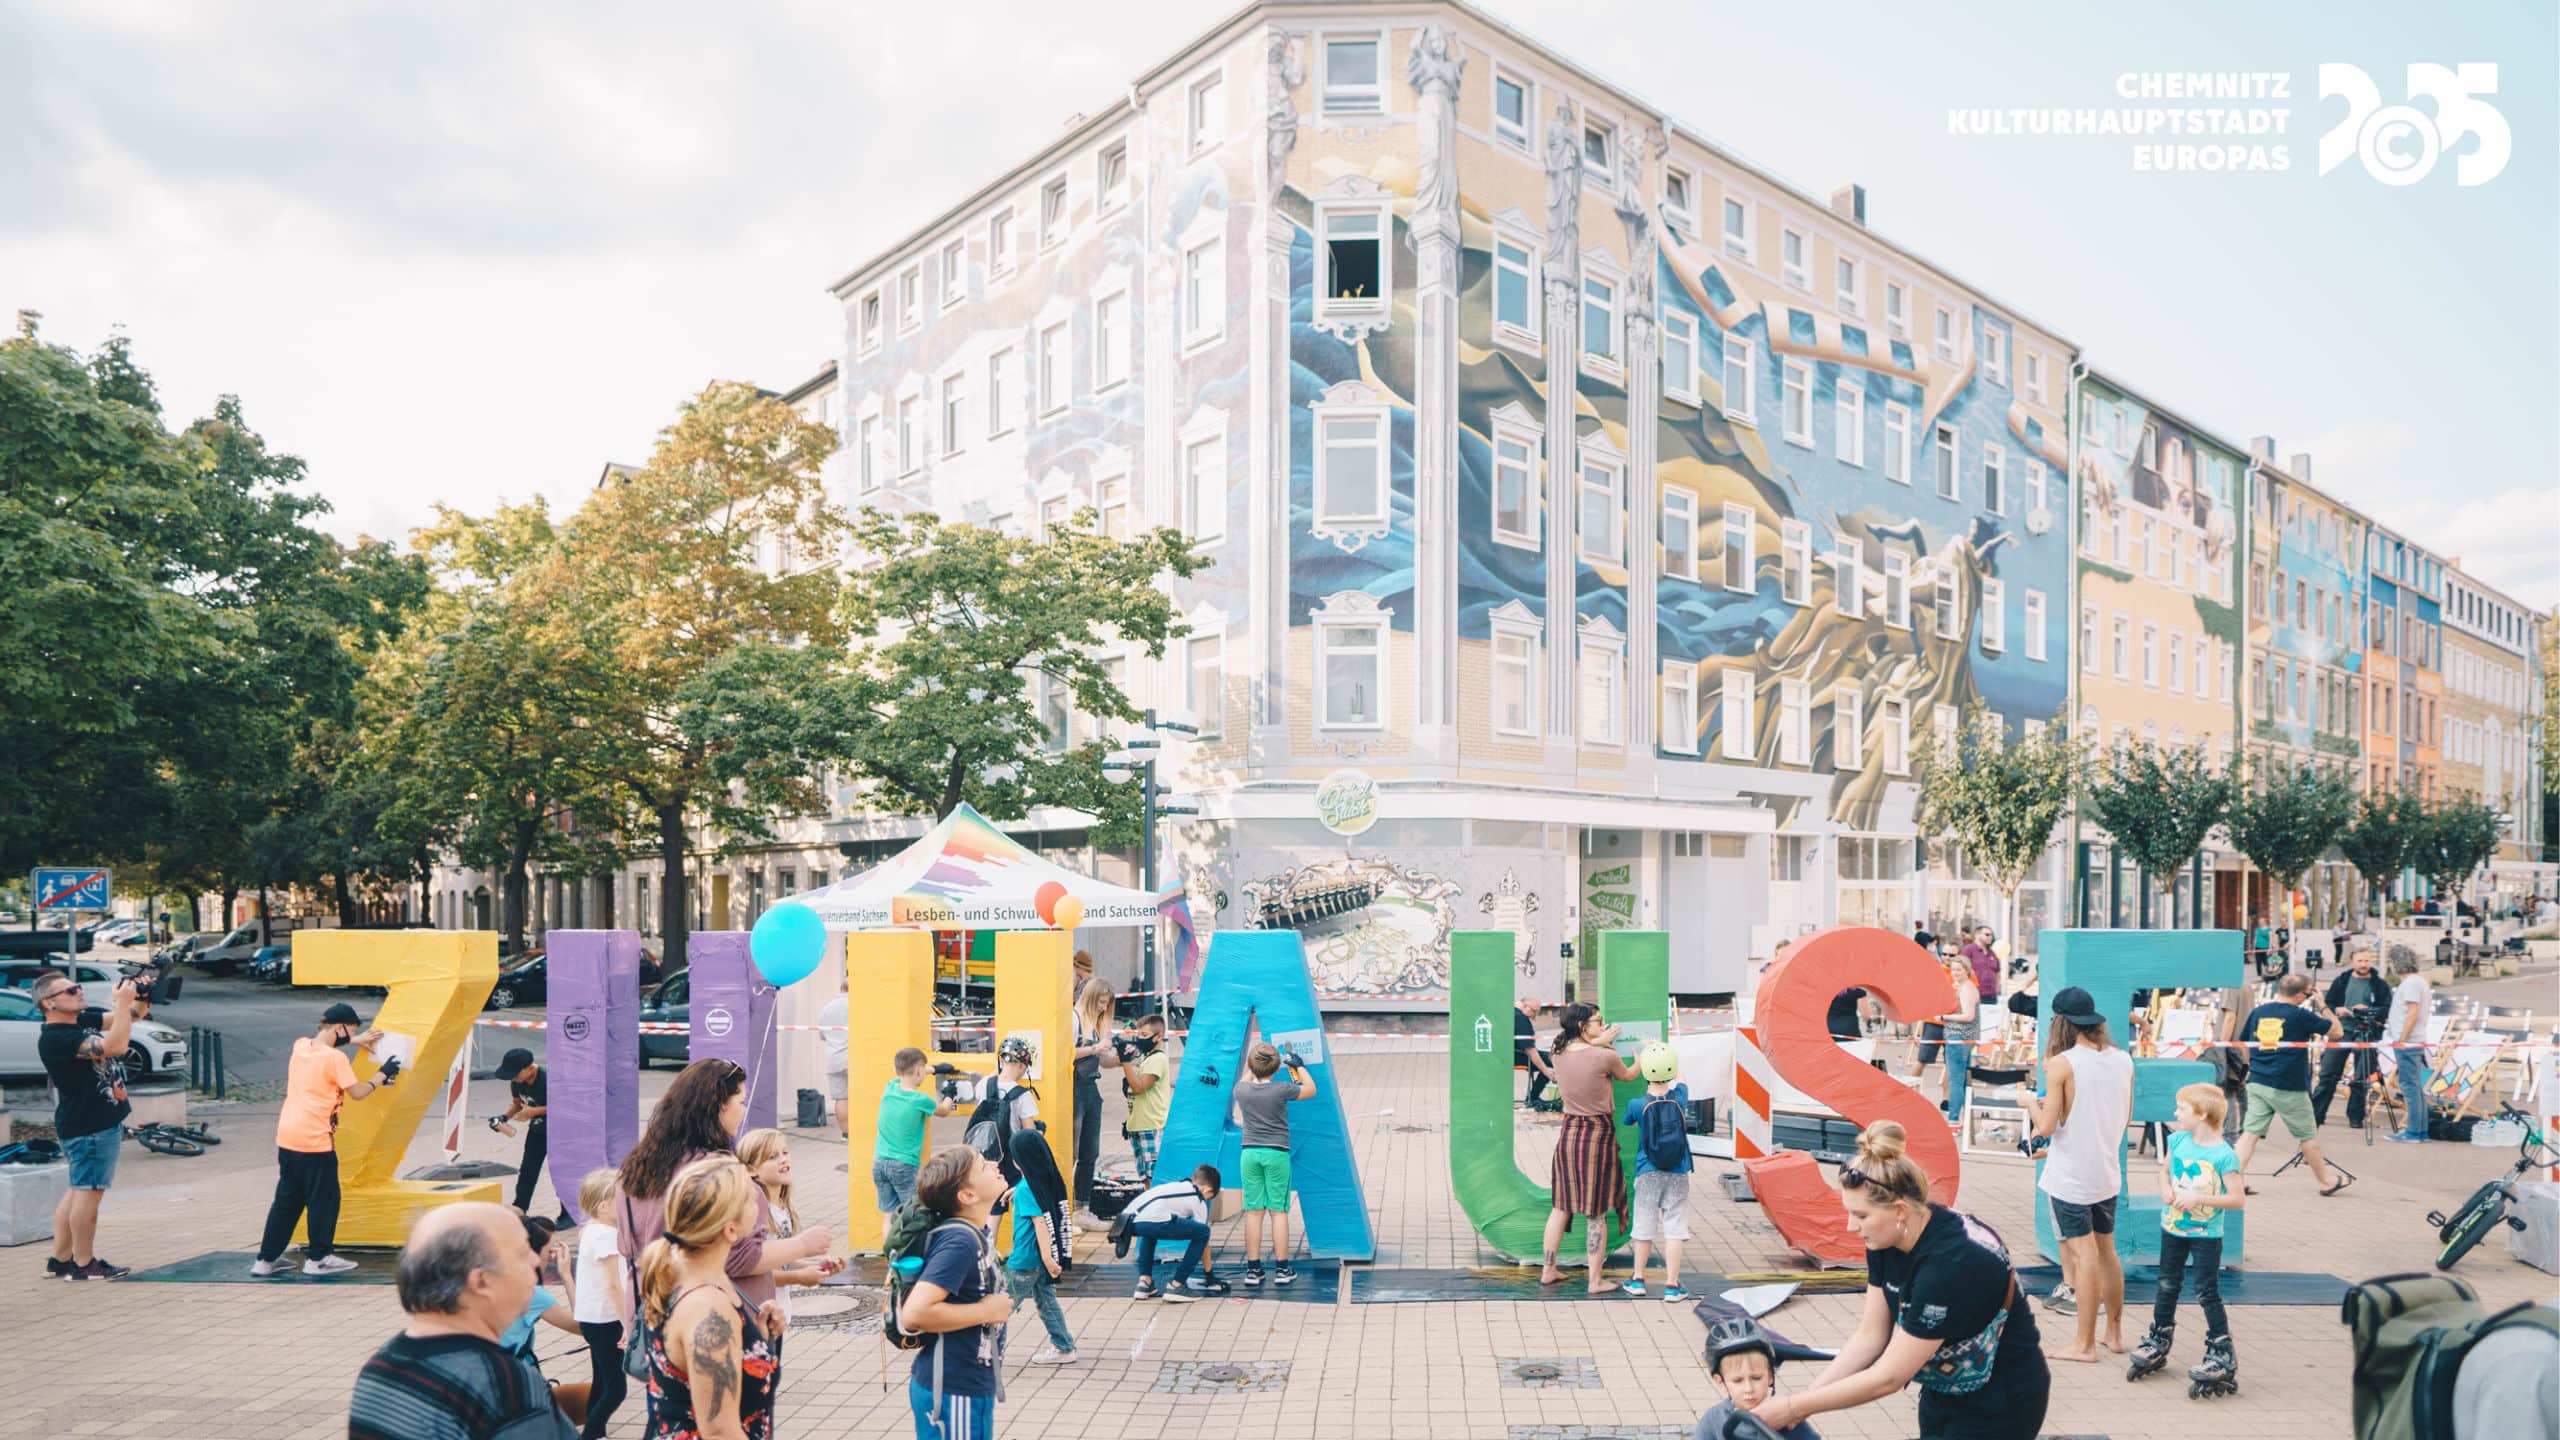 Chemnitz als Kulturhauptstadt Europas 2025